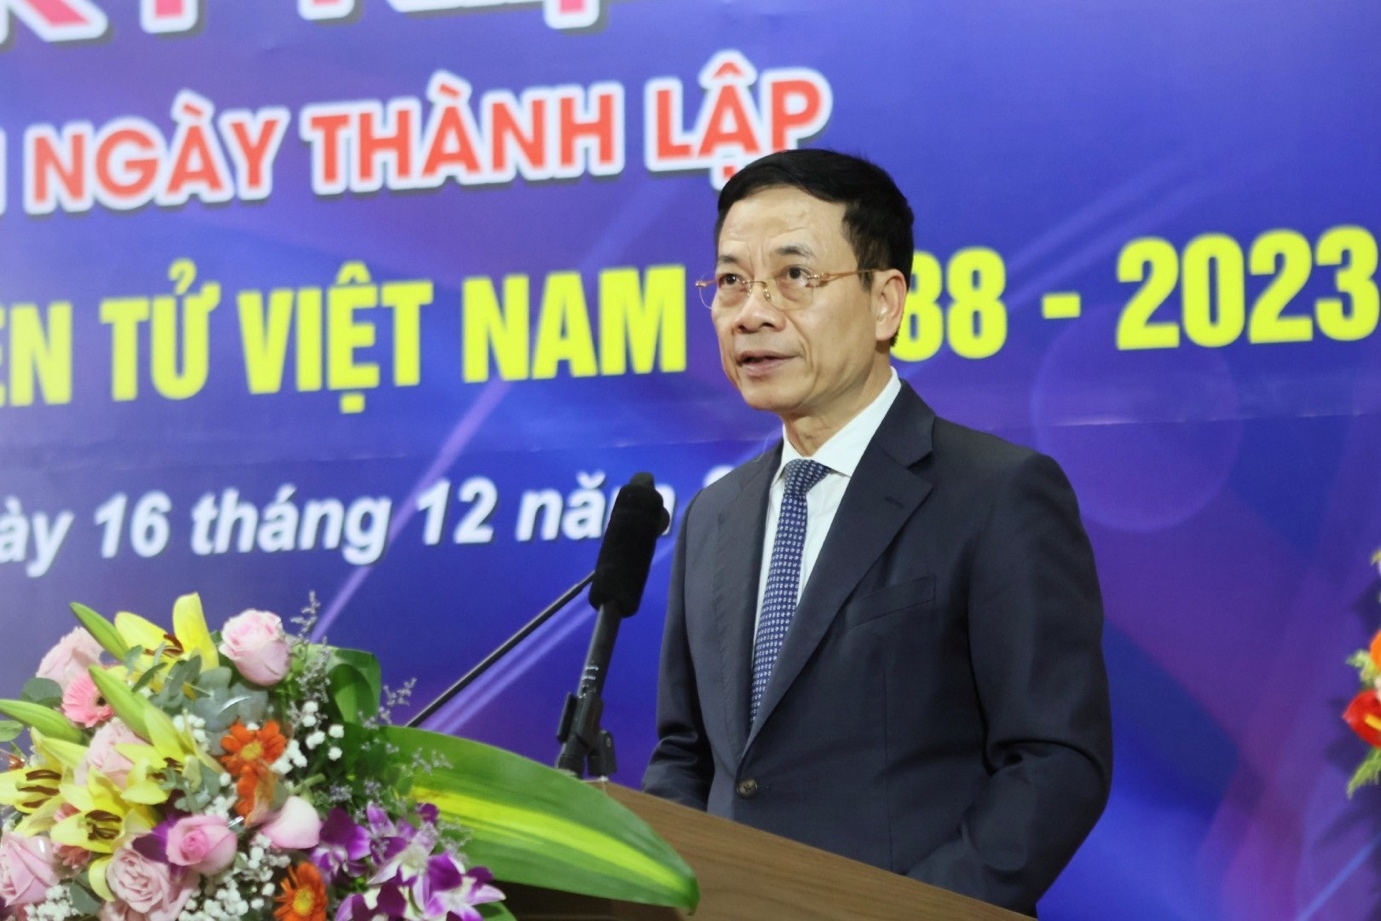 Hội Vô tuyến - Điện tử Việt Nam kỷ niệm 35 năm ngày thành lập